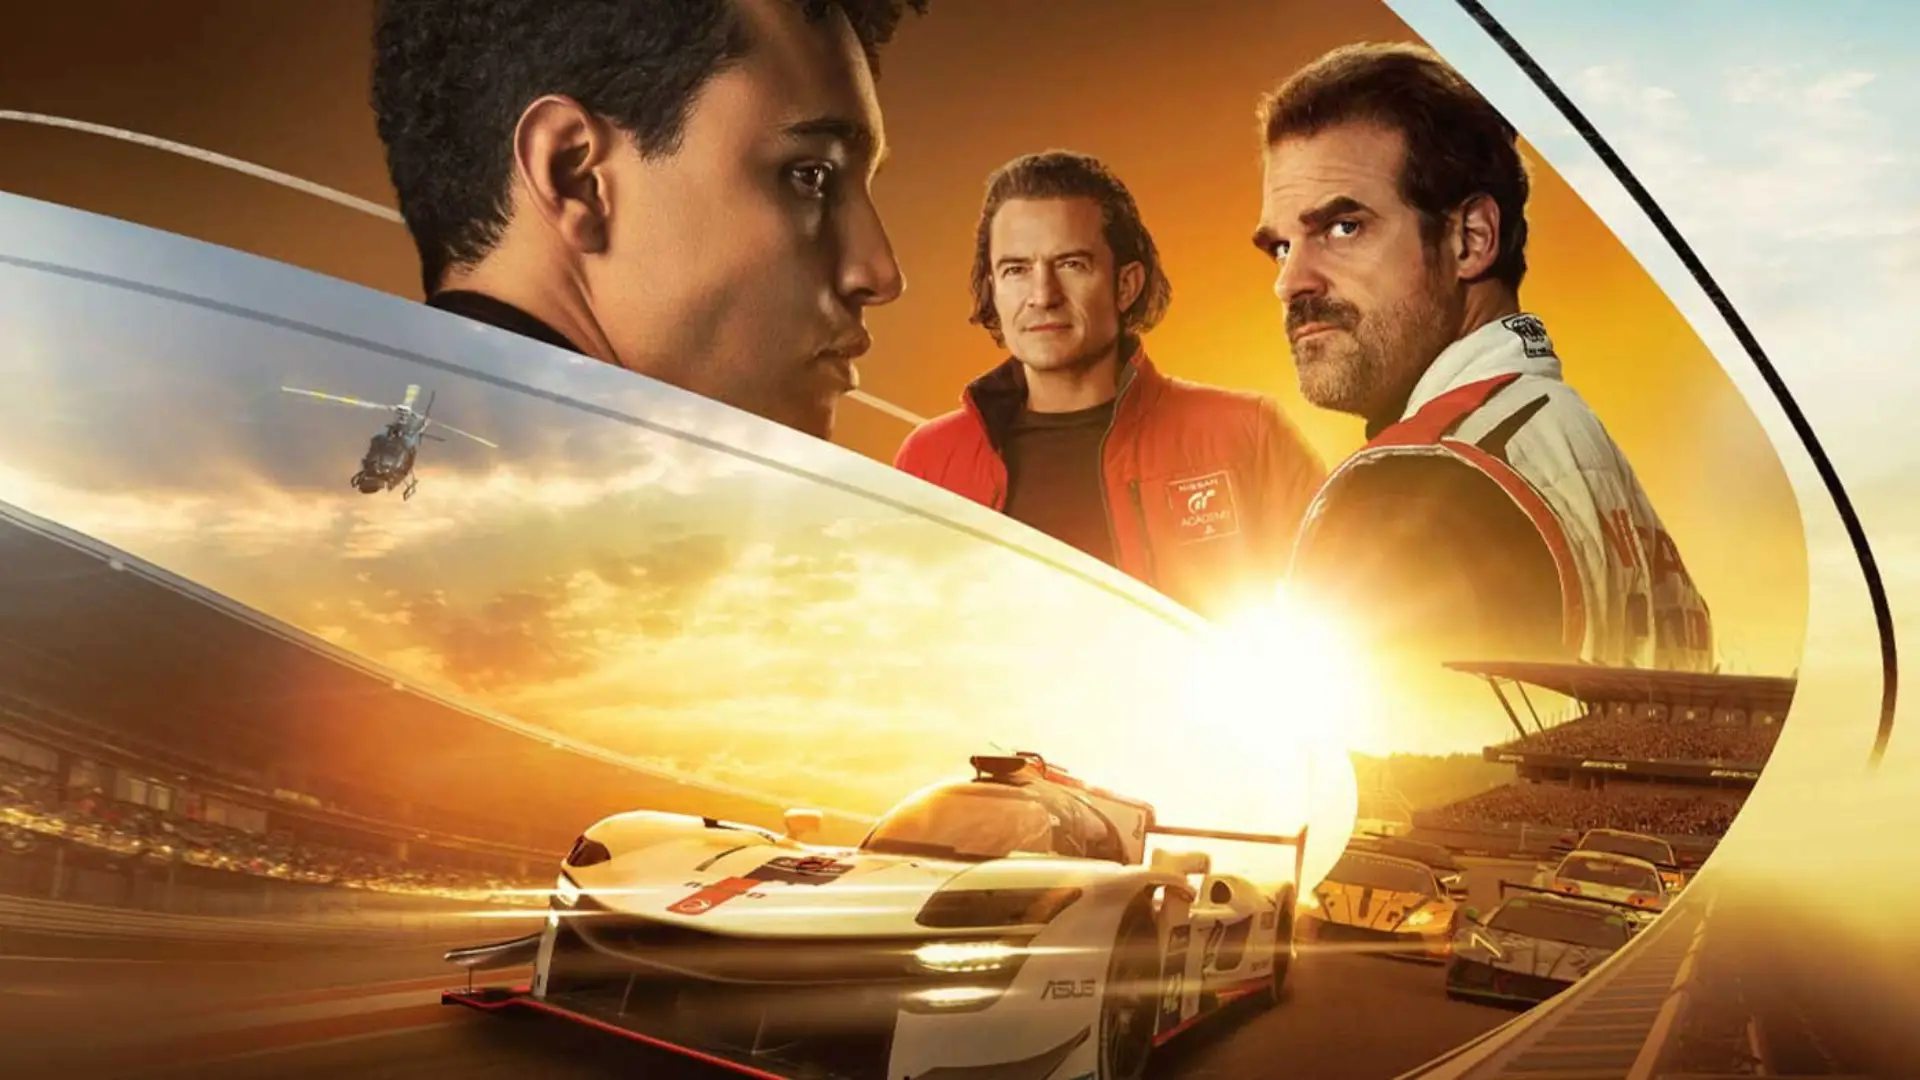 Gran Turismo: O Filme estreia em agosto de 2023 - Outer Space